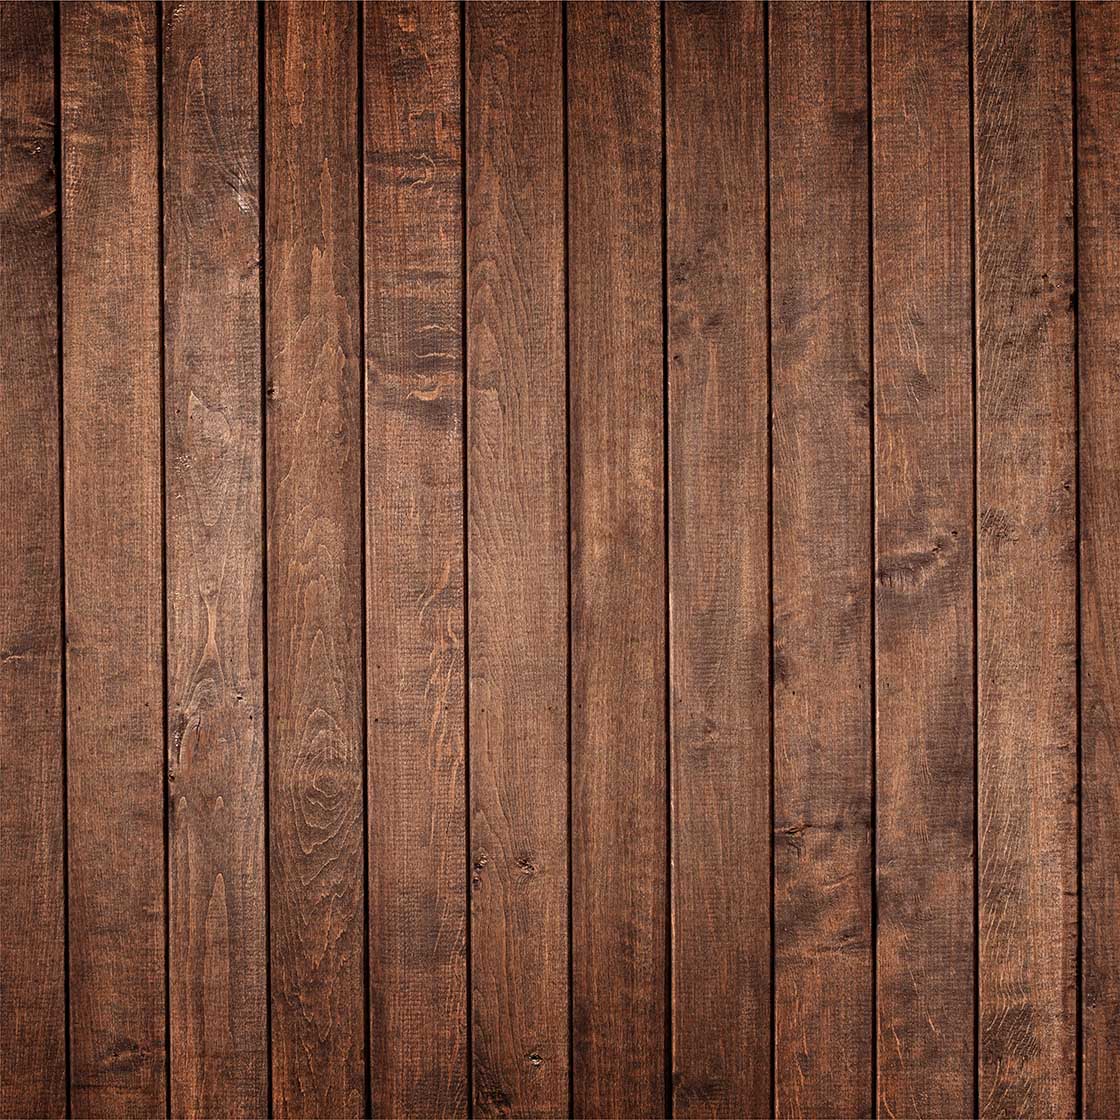 Autocolant Mobilă Grunge Wood Panels - clevny.ro